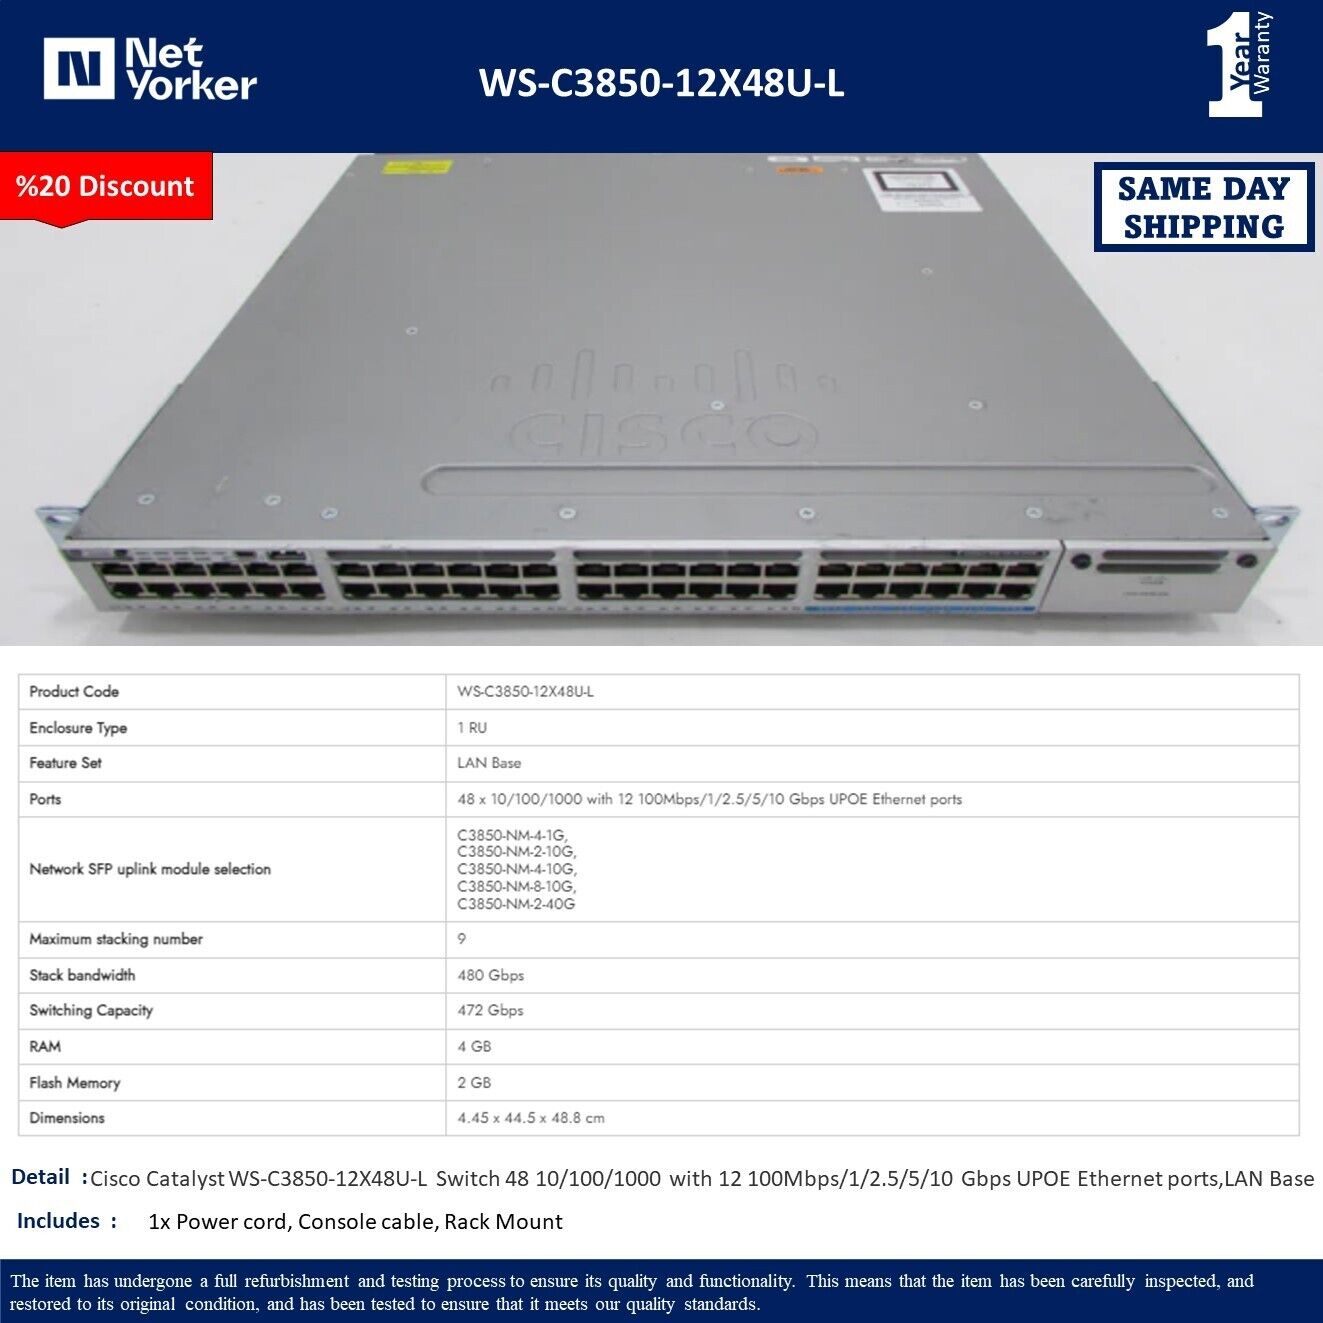 Cisco WS-C3850-12X48U-L 48 Port 10/100/1000 Modular Uplink Switch-Same Day Shipp